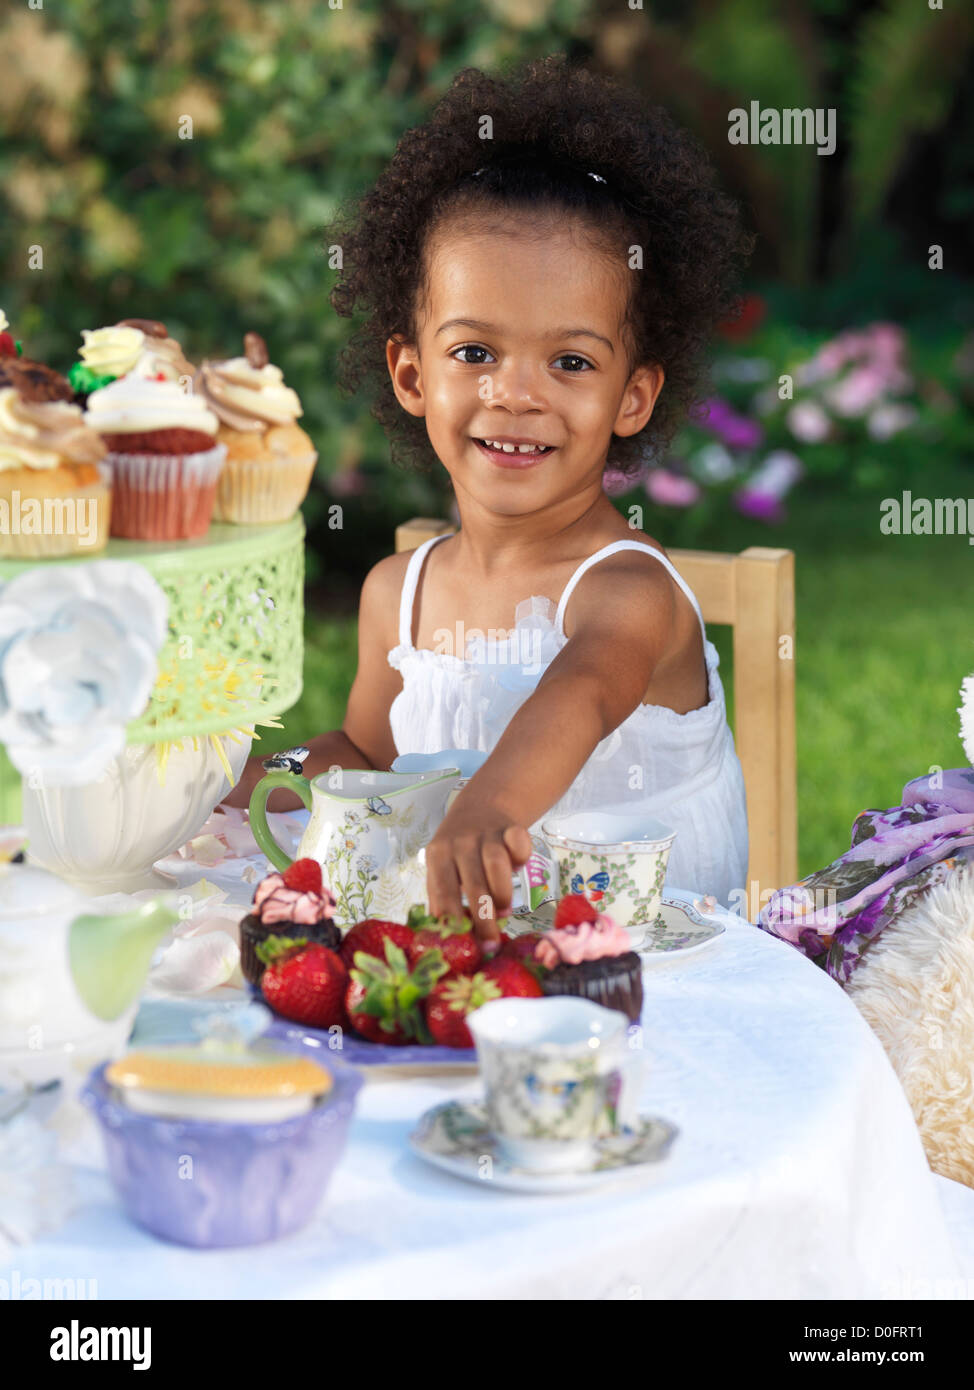 Licenza disponibile a MaximImages.com - ragazza sorridente felice che ha una festa estiva all'aperto. Bere tè con cupcake. Foto Stock